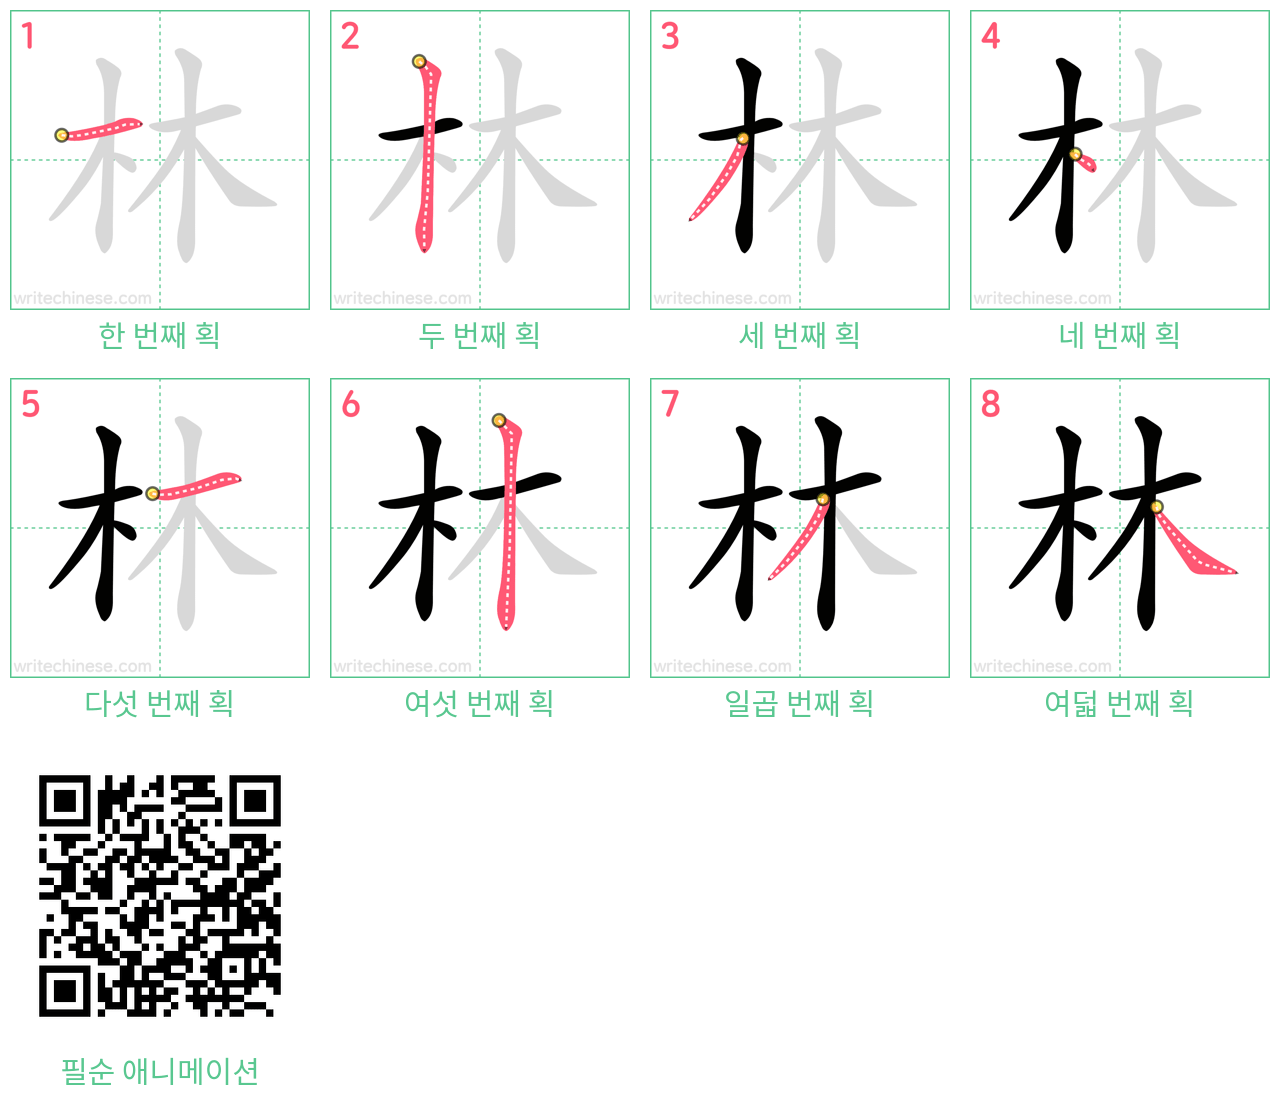 林 step-by-step stroke order diagrams